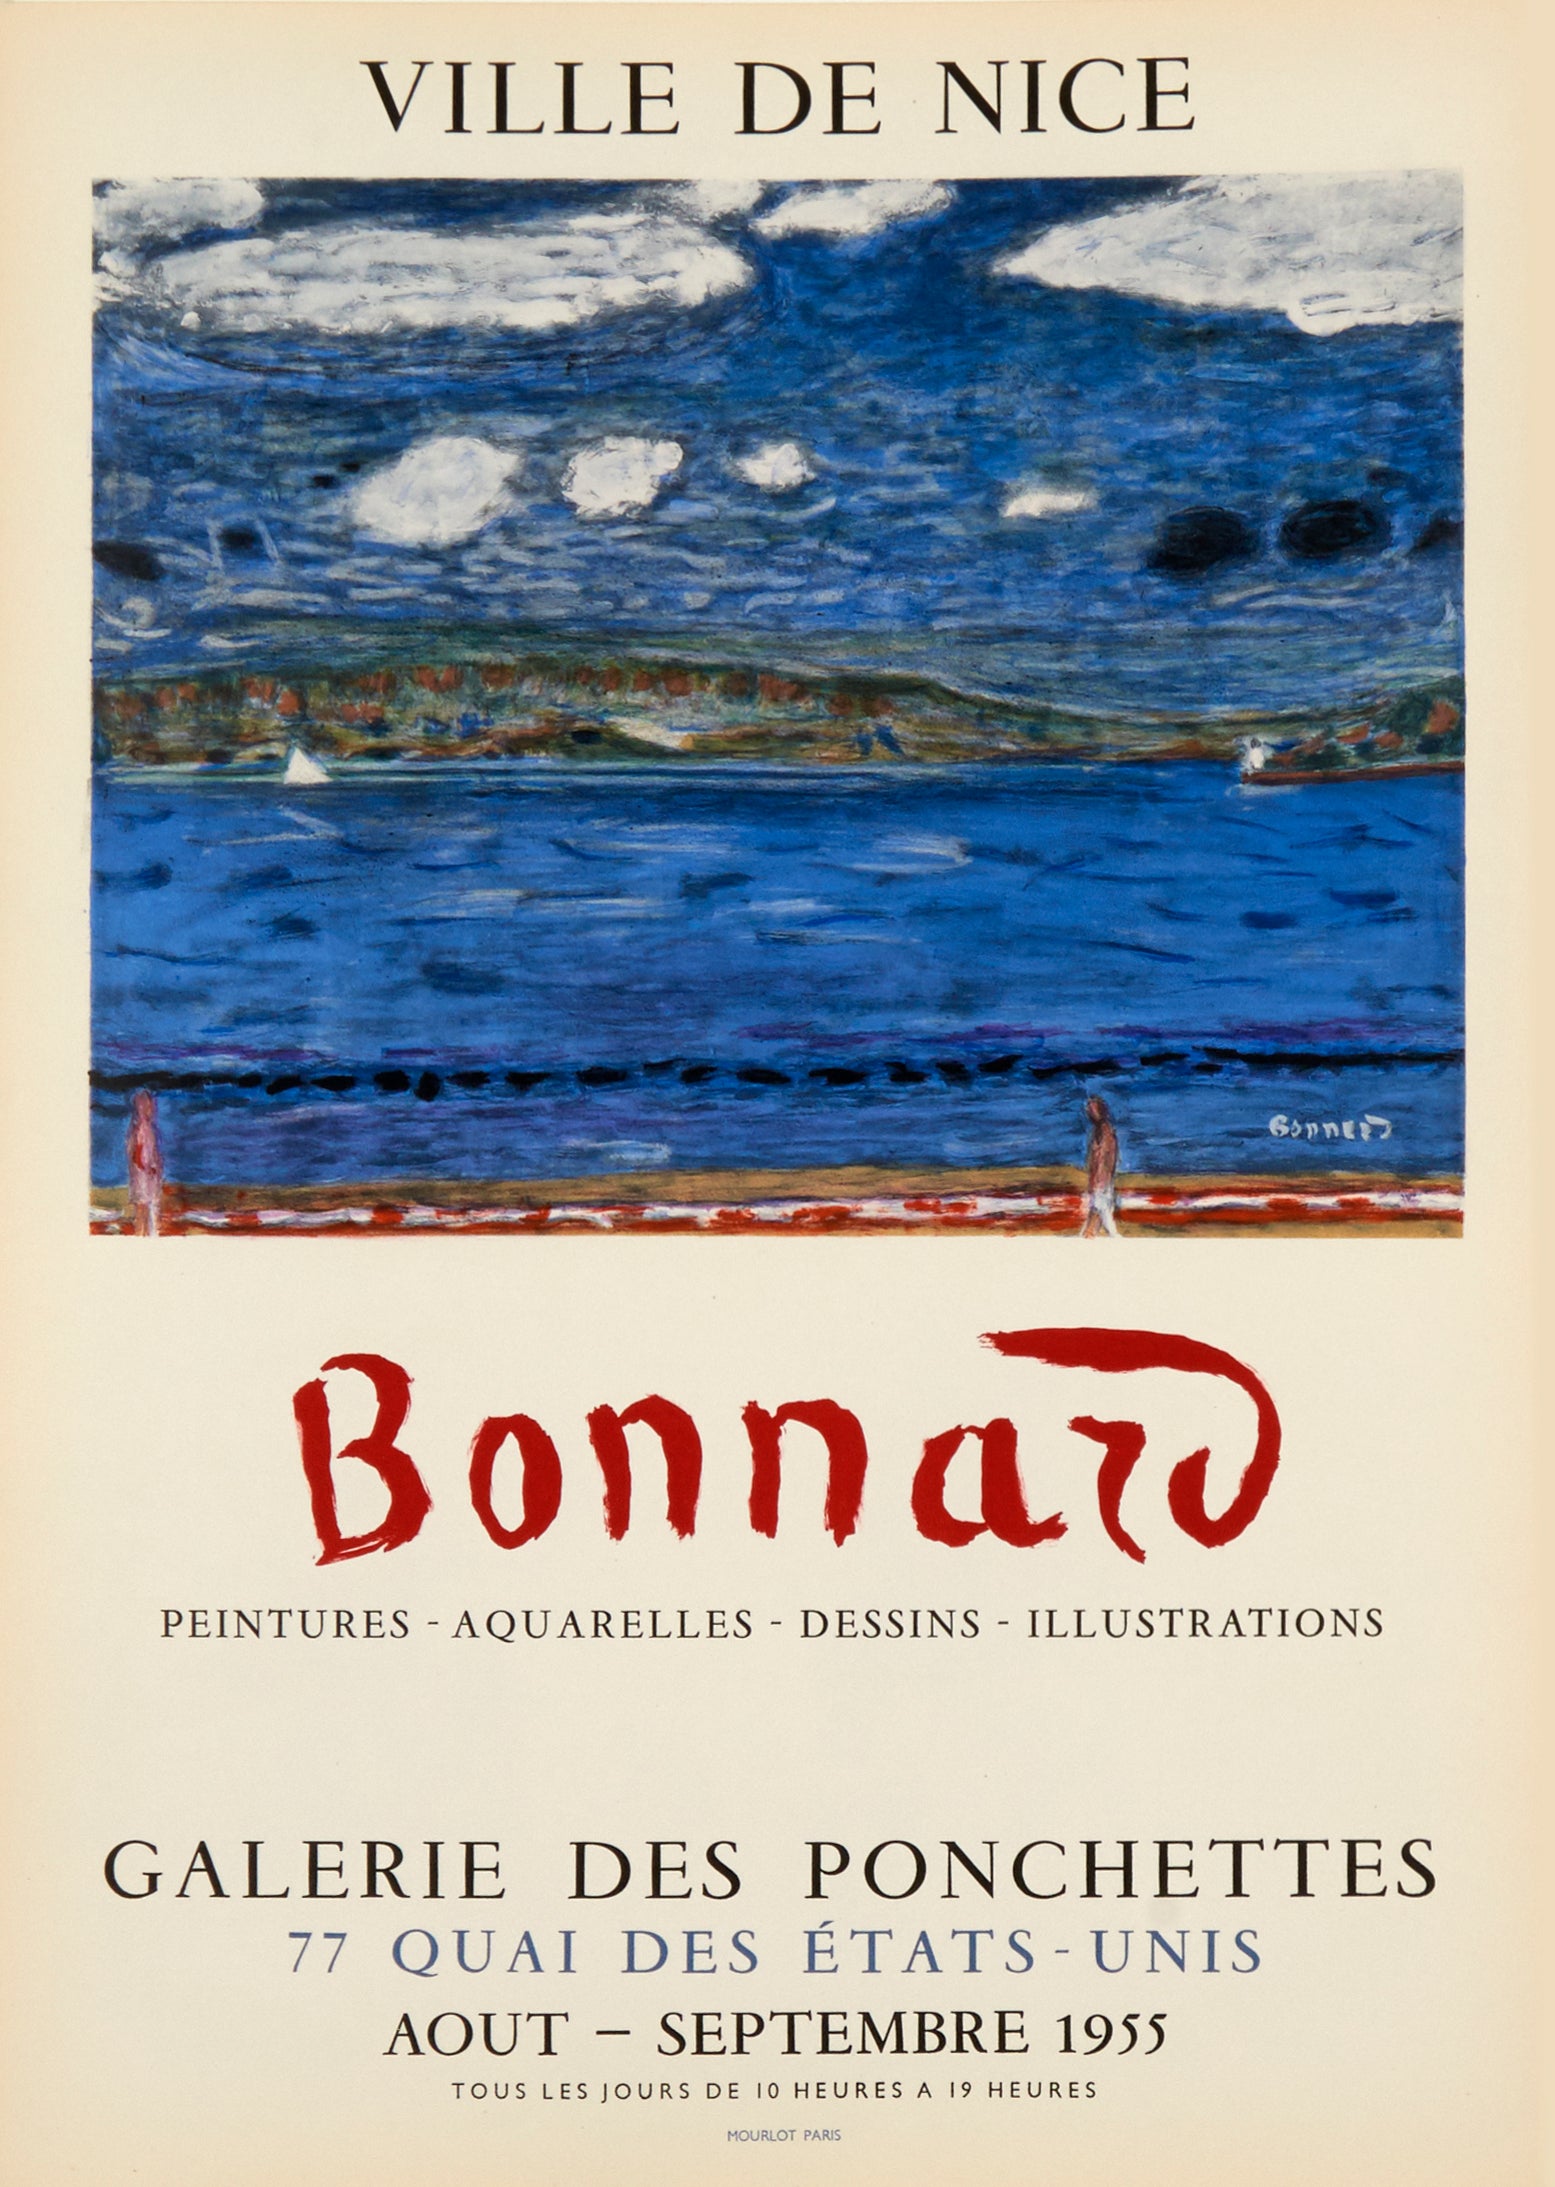 Galerie des Ponchettes by Pierre Bonnard, 1955 - Mourlot Editions - Fine_Art - Poster - Lithograph - Wall Art - Vintage - Prints - Original